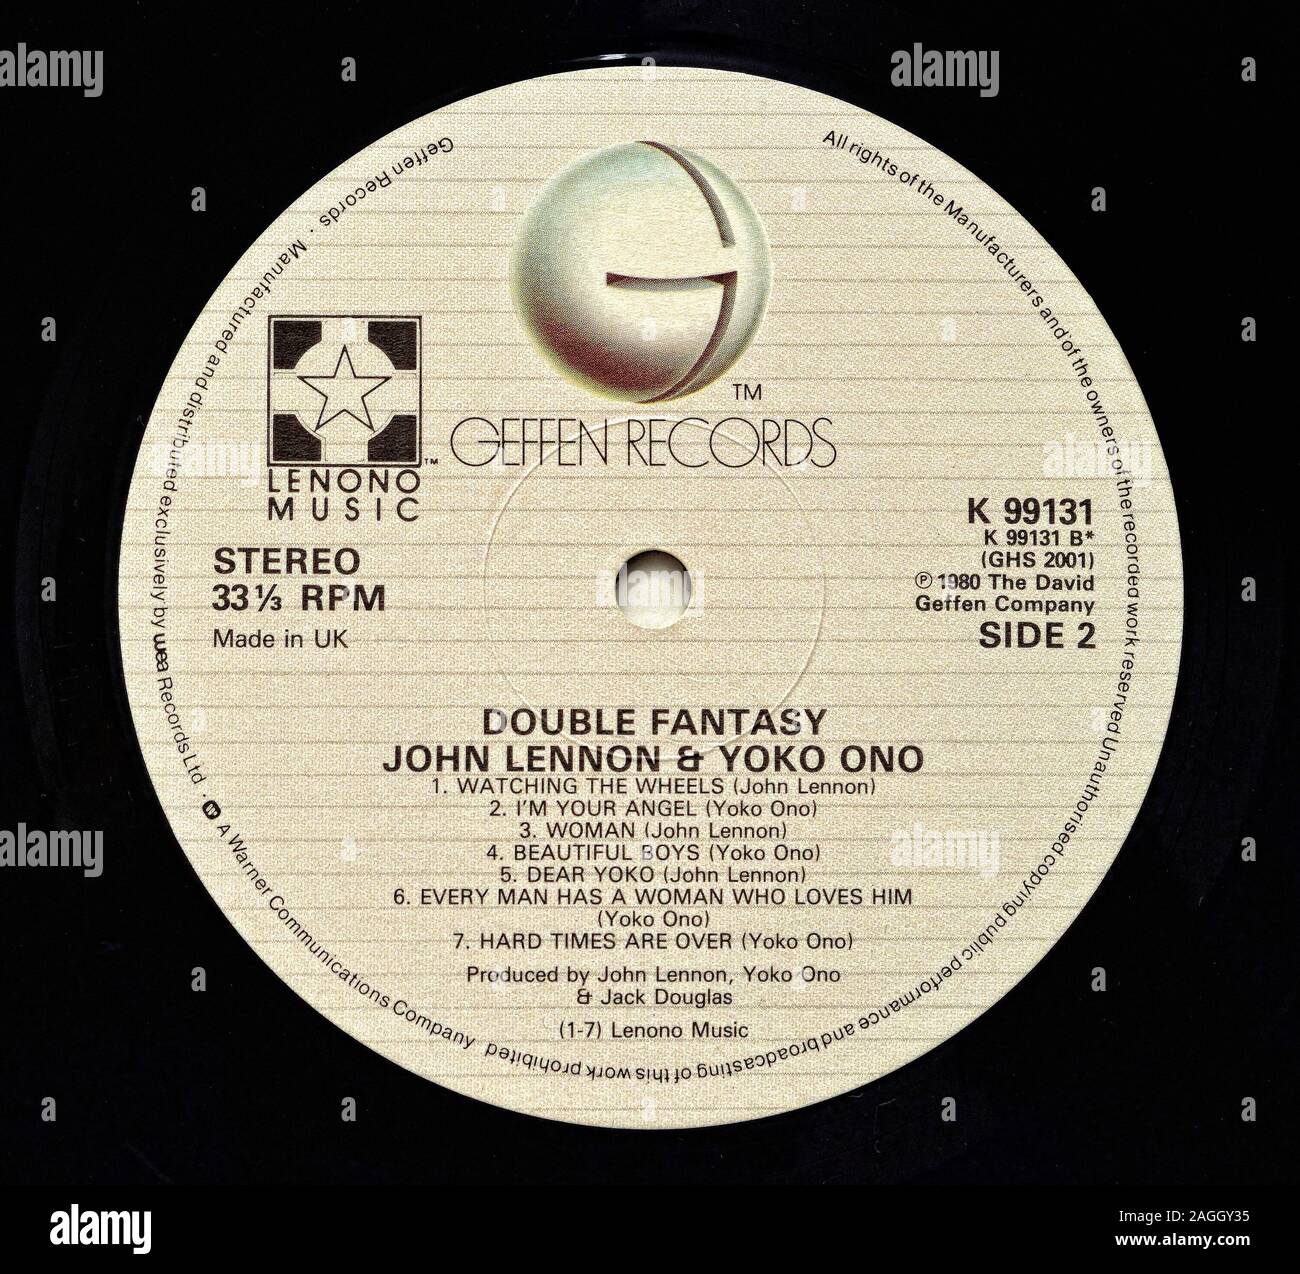 Double Fantasy di John Lennon e Yoko Ono, vinile etichetta discografica  Foto stock - Alamy